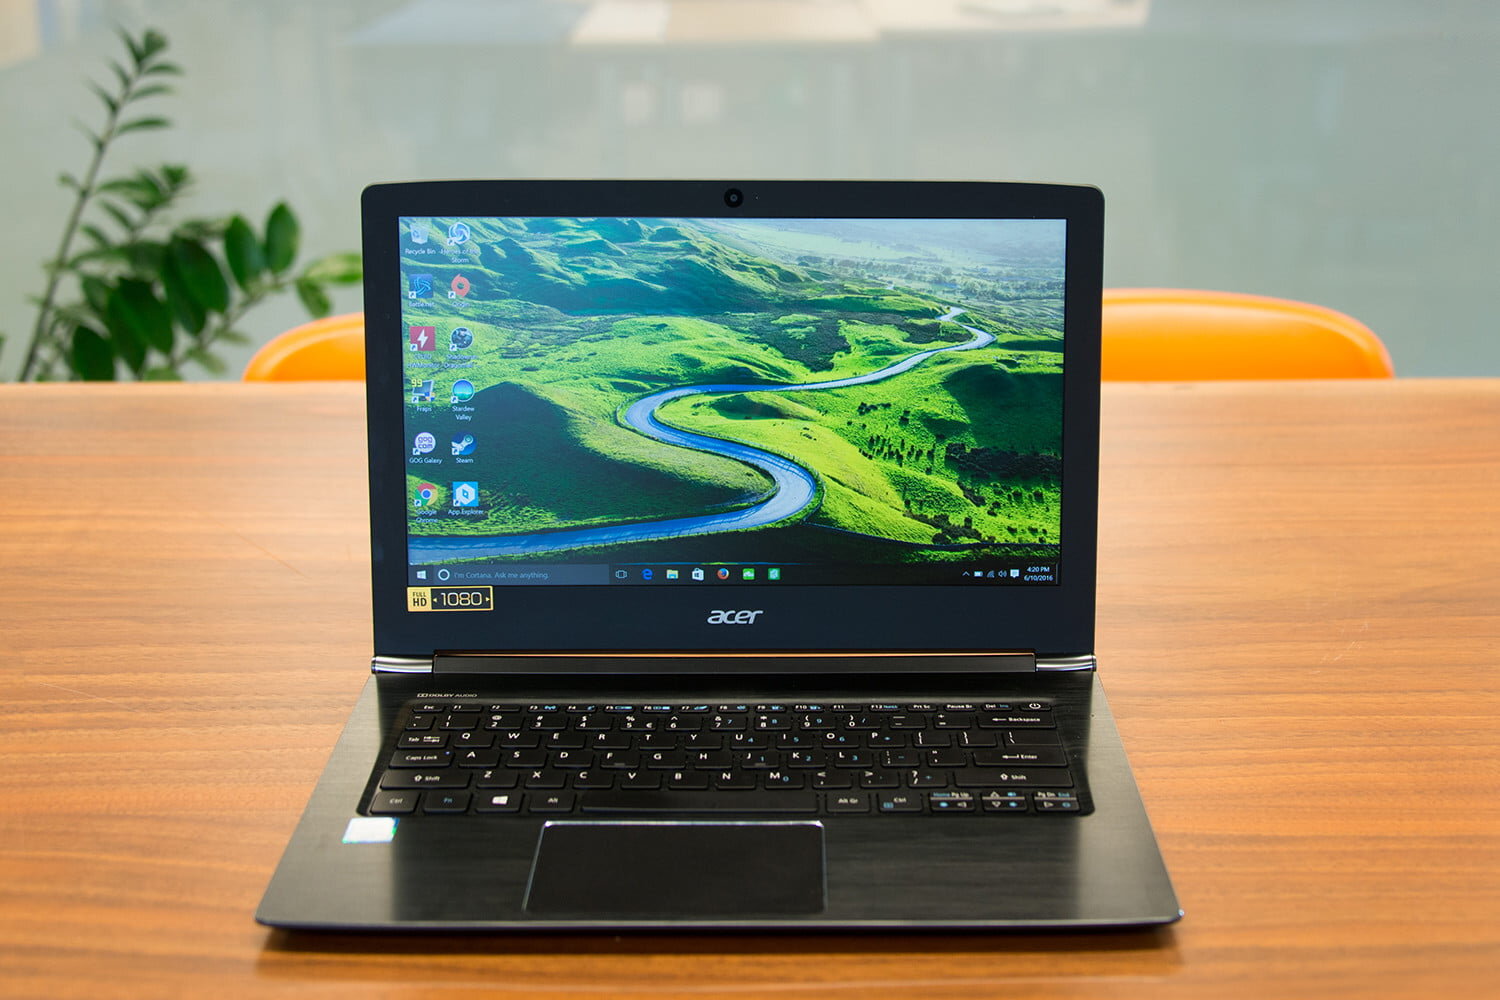 Laptop Acer Aspire E5 573 chiếc máy thời đại 